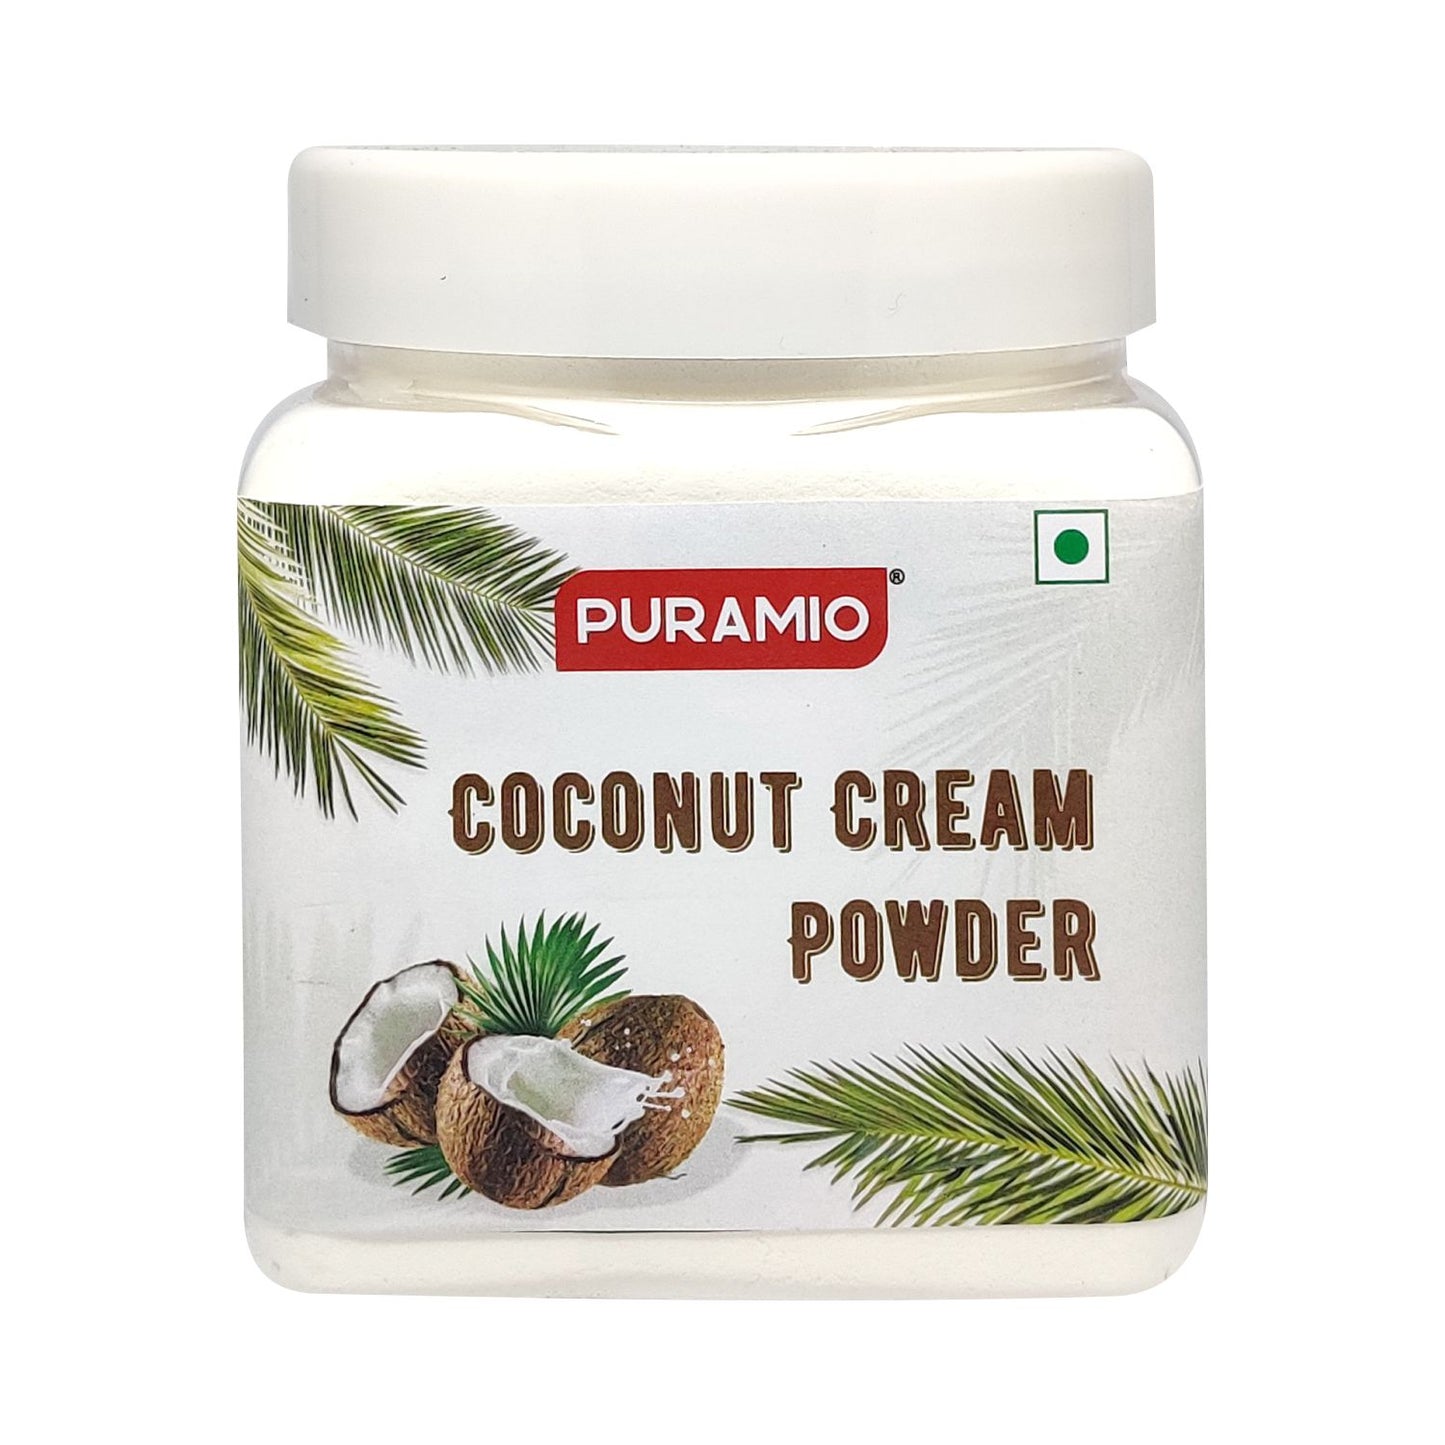 Puramio Coconut Cream Powder